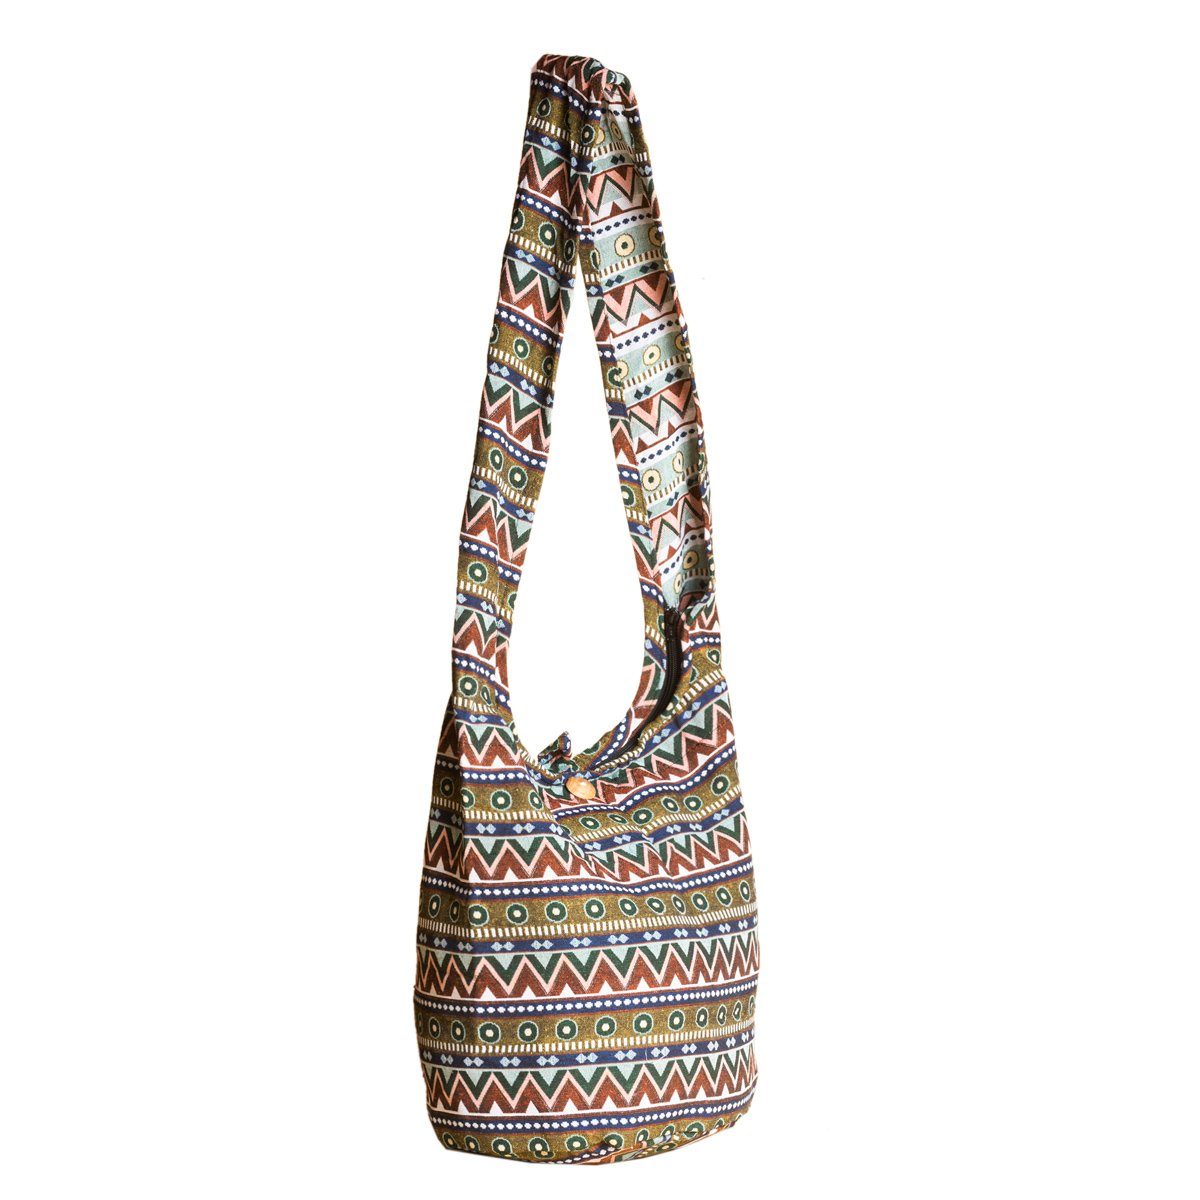 Beuteltasche WOV30 2 % Strandtasche Designs Baumwolle In als PANASIAM aus Wickeltasche auch in Handtasche Schulterbeutel gewebten geeignet 100 Größen Umhängetasche, und